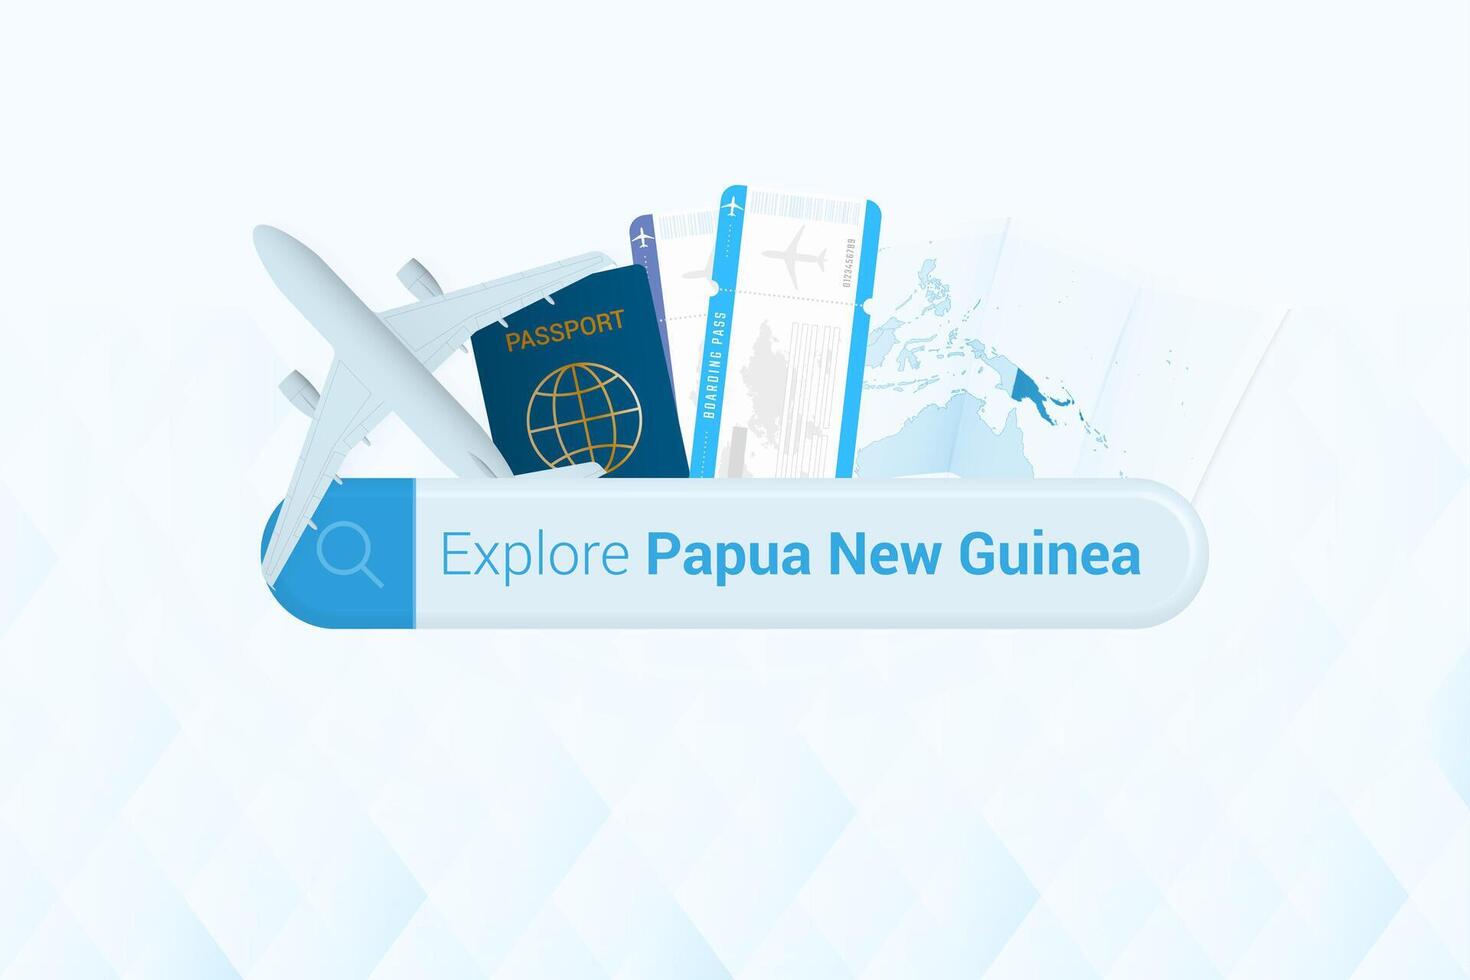 recherche des billets à papouasie Nouveau Guinée ou Voyage destination dans papouasie Nouveau Guinée. recherche bar avec avion, passeport, embarquement passer, des billets et carte. vecteur